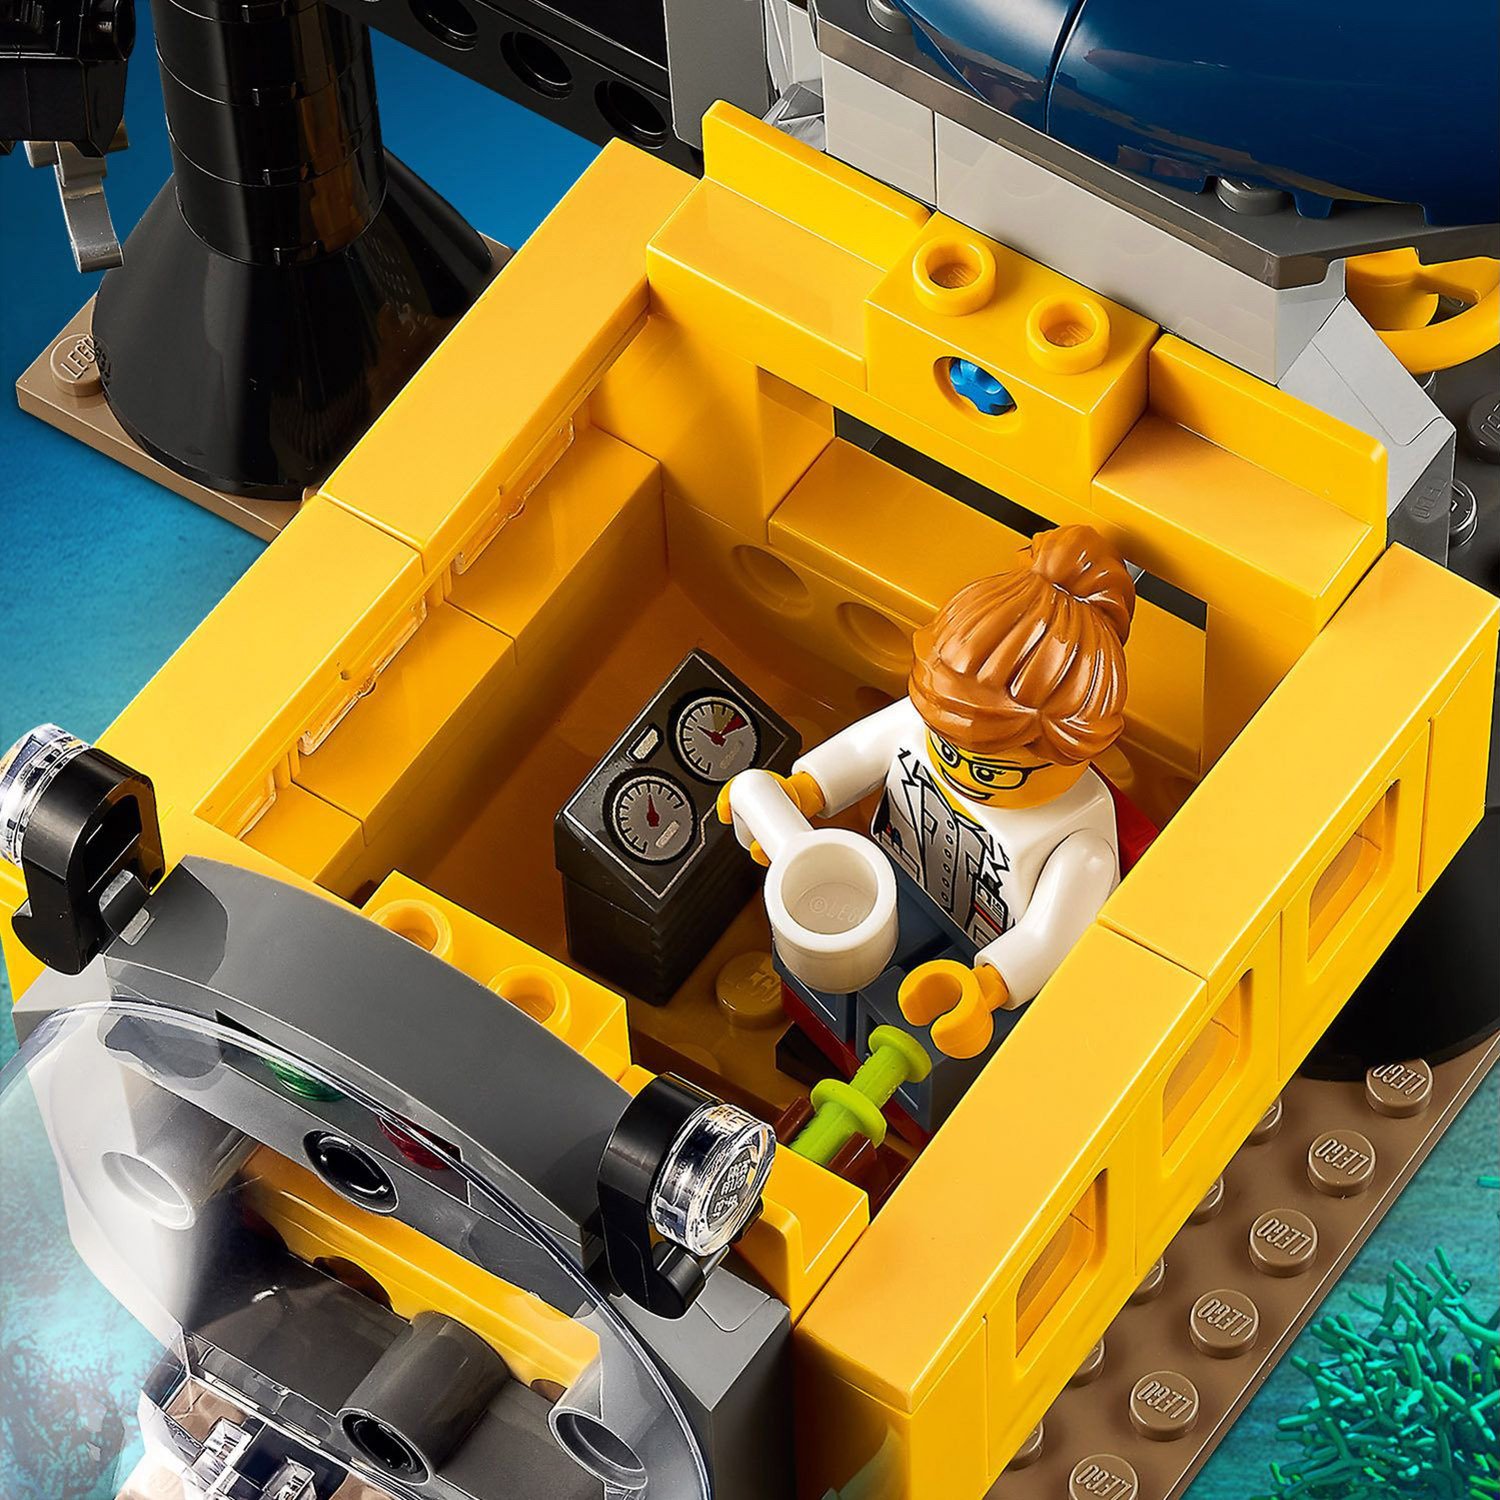 Lego City 60265 Океан: исследовательская база